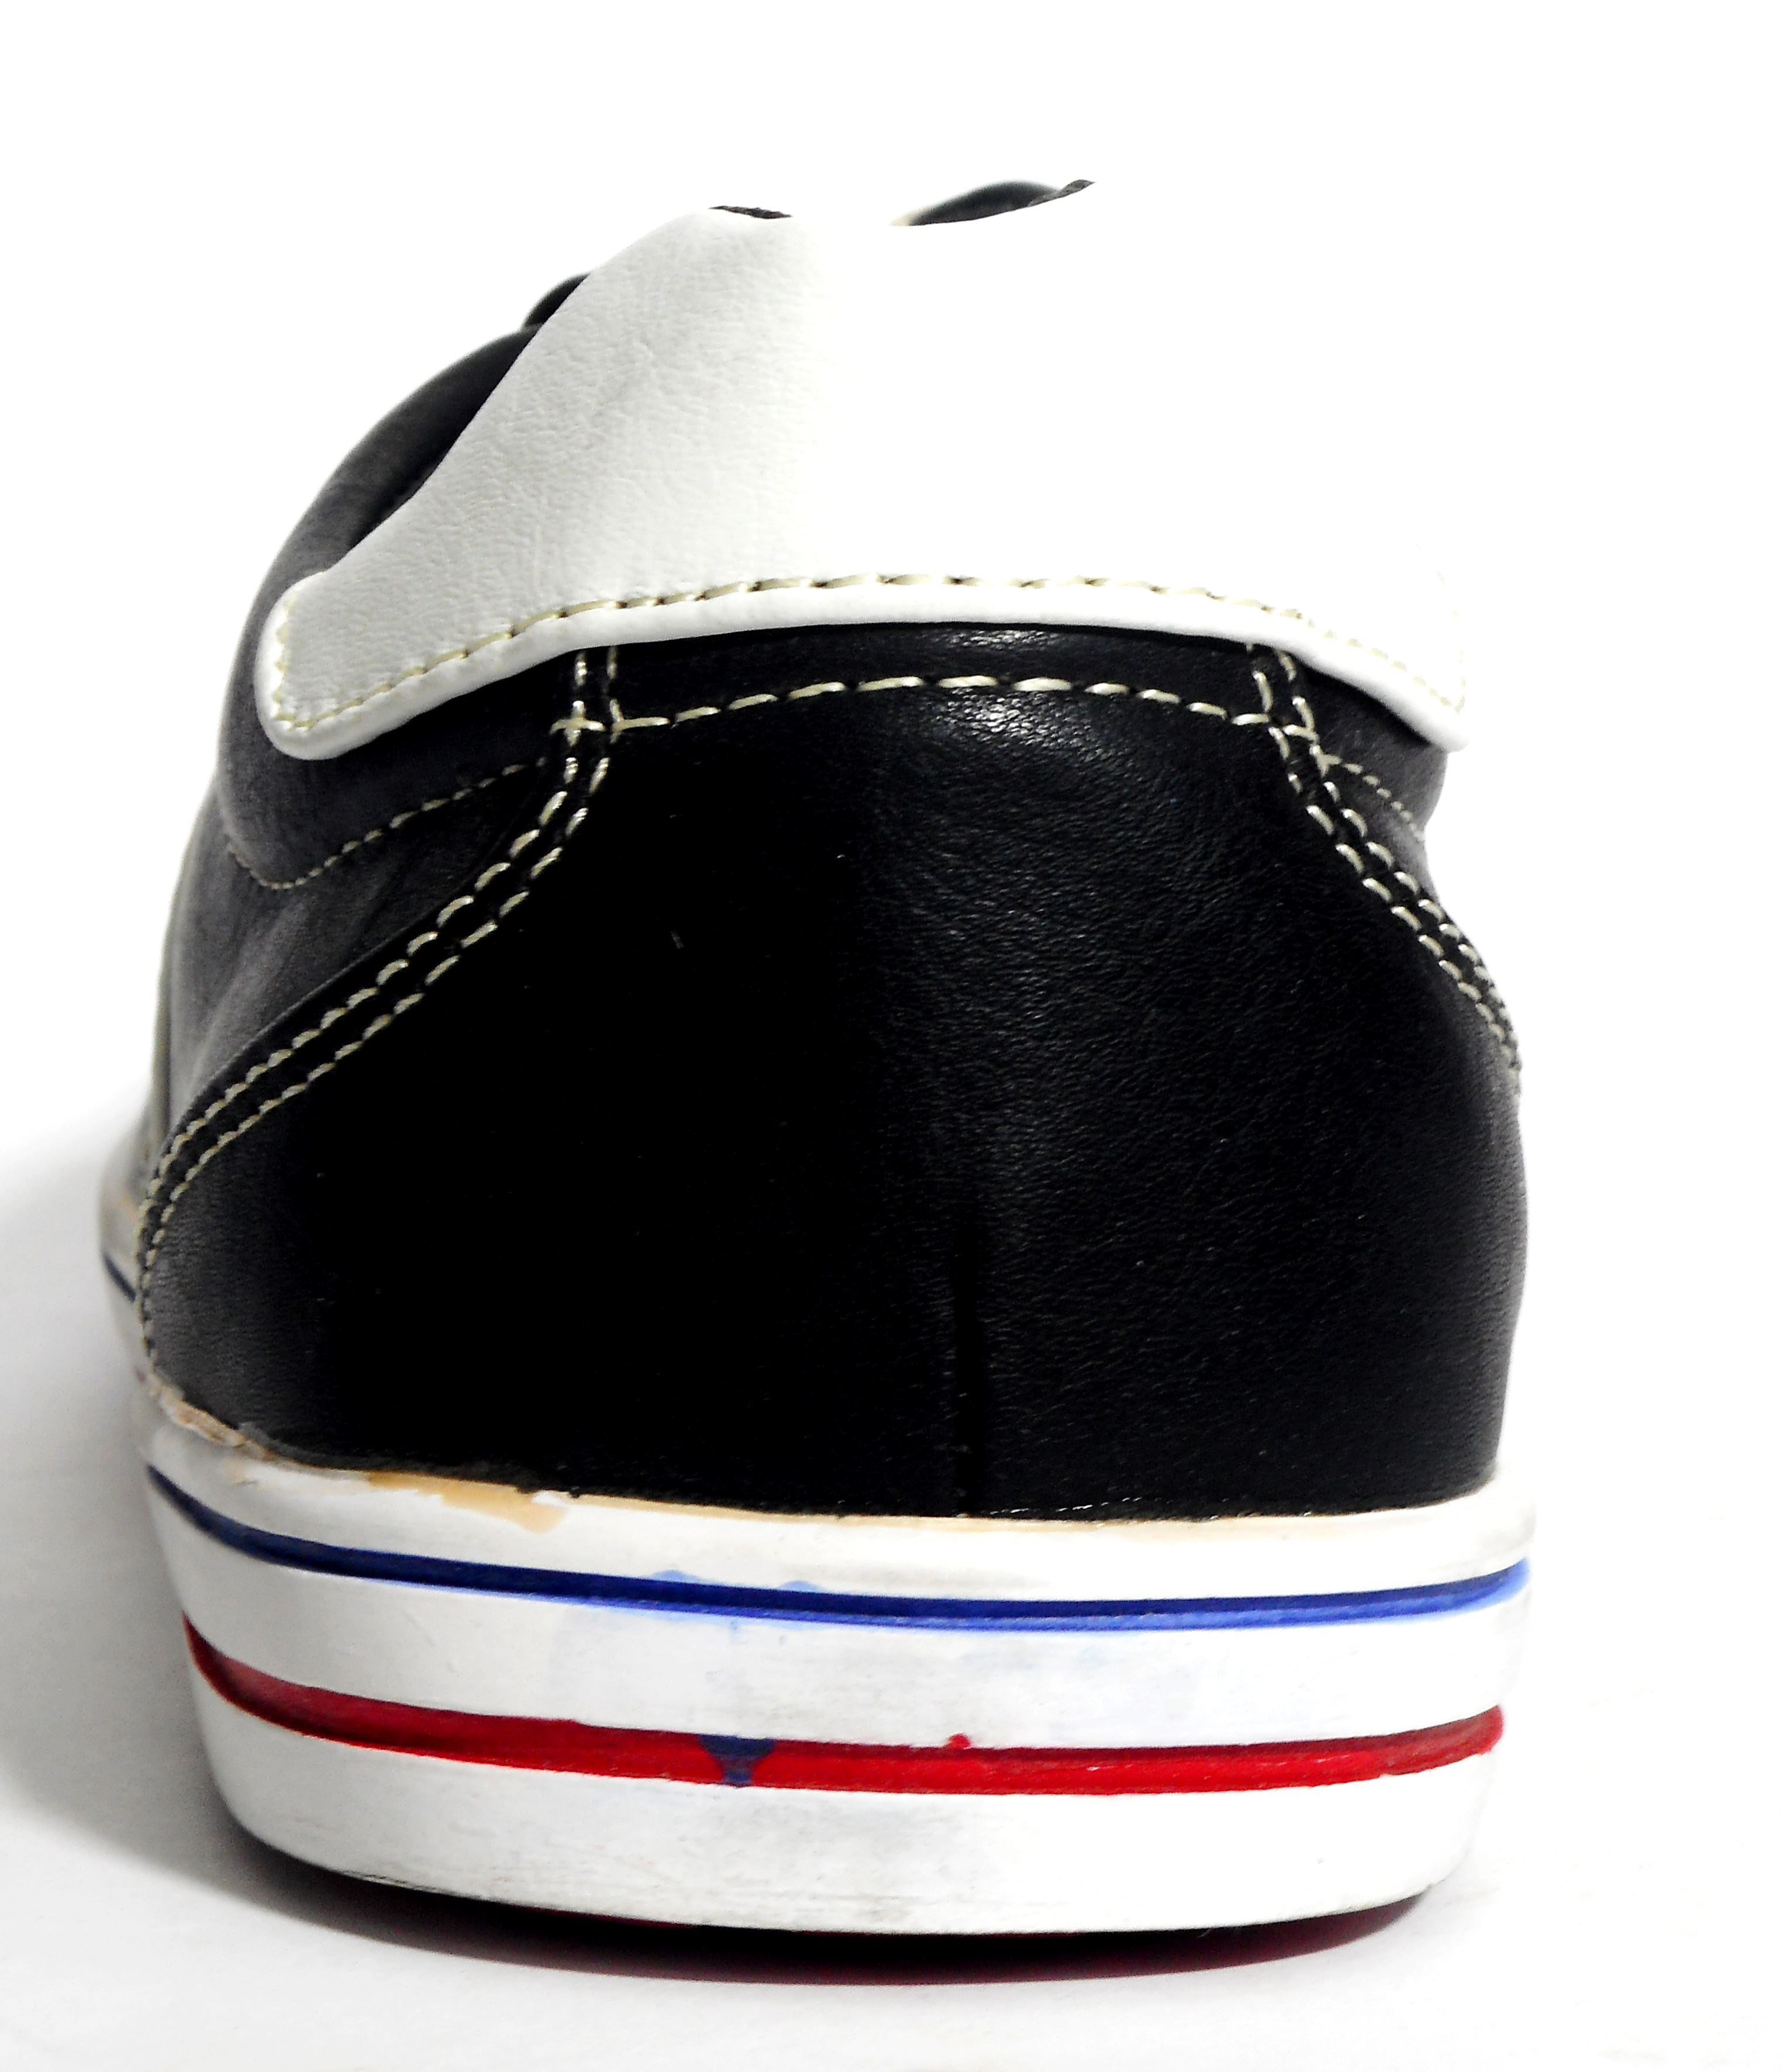 Numer Uno NU-544 Lifestyle Black Casual Shoes - Buy Numer Uno NU-544 ...